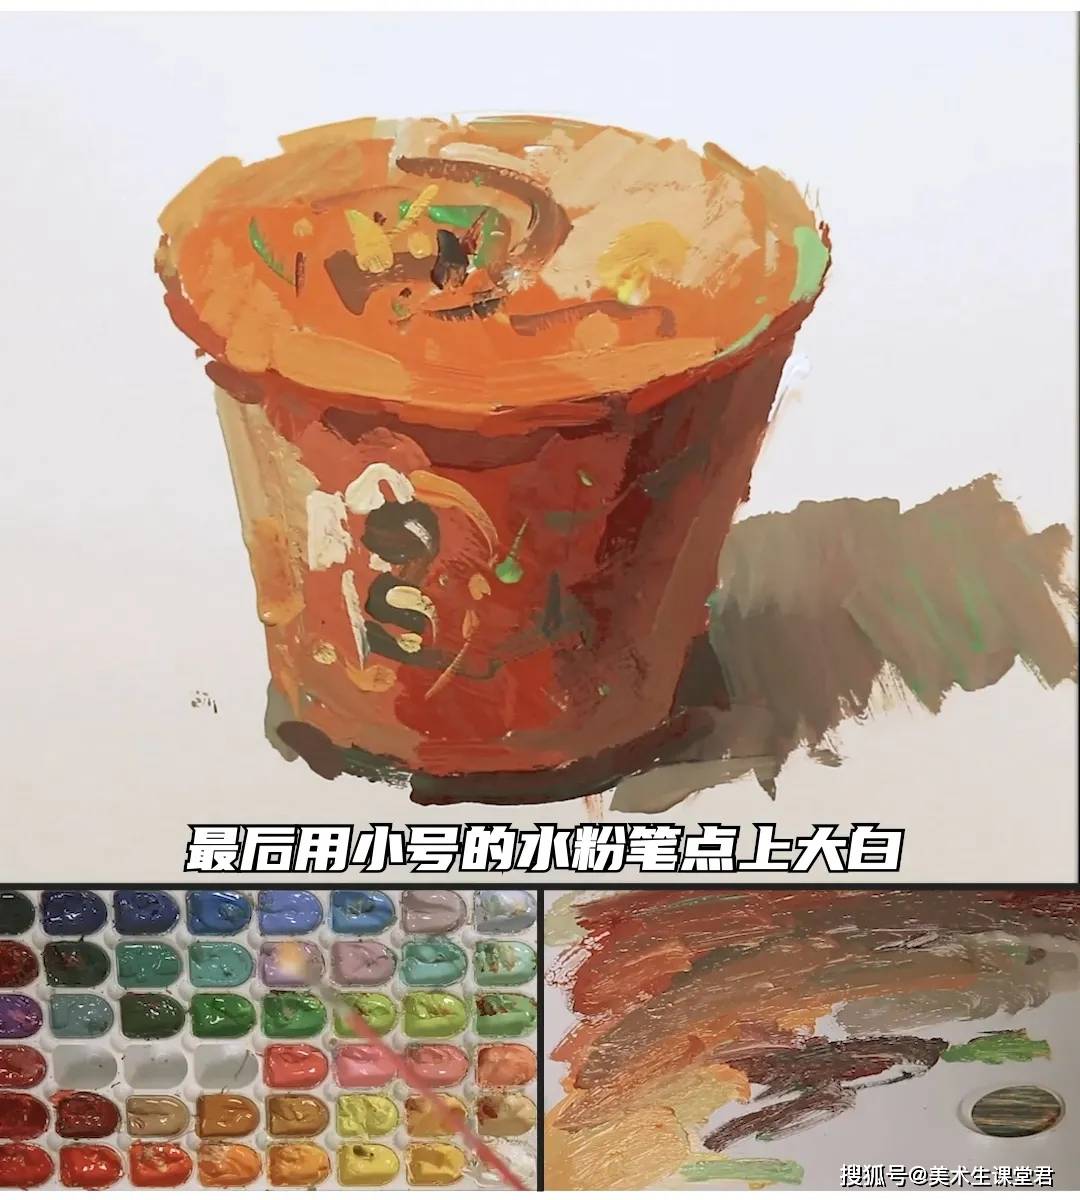 联考色彩系列丨色彩静物单体桶装泡面教学讲解,附范画